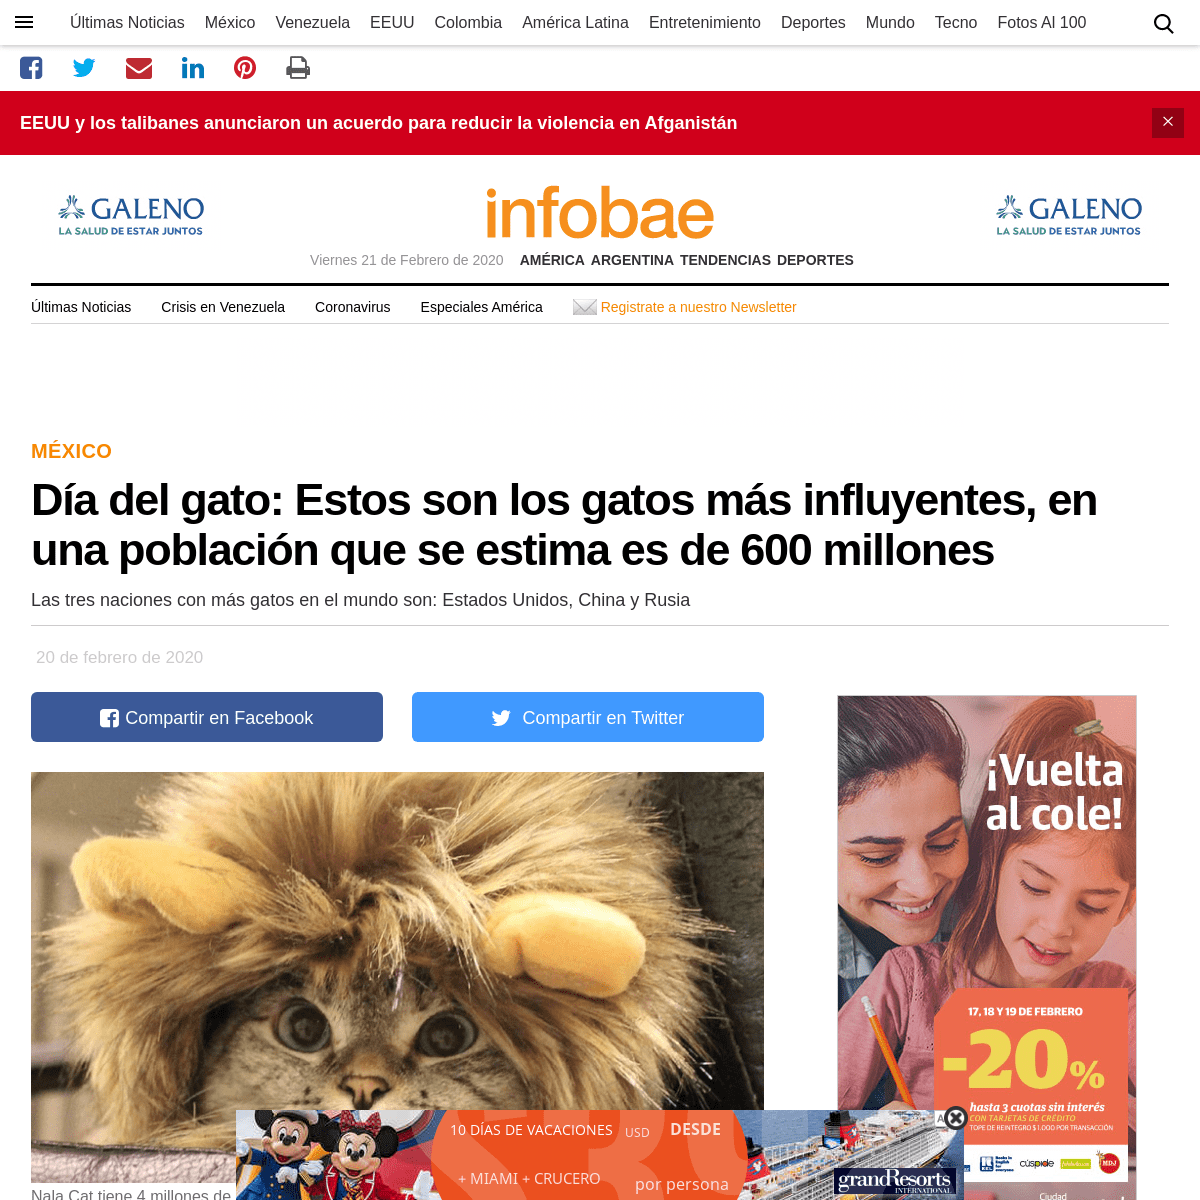 A complete backup of www.infobae.com/america/mexico/2020/02/20/dia-del-gato-estos-son-los-gatos-mas-influyentes-en-una-poblacion